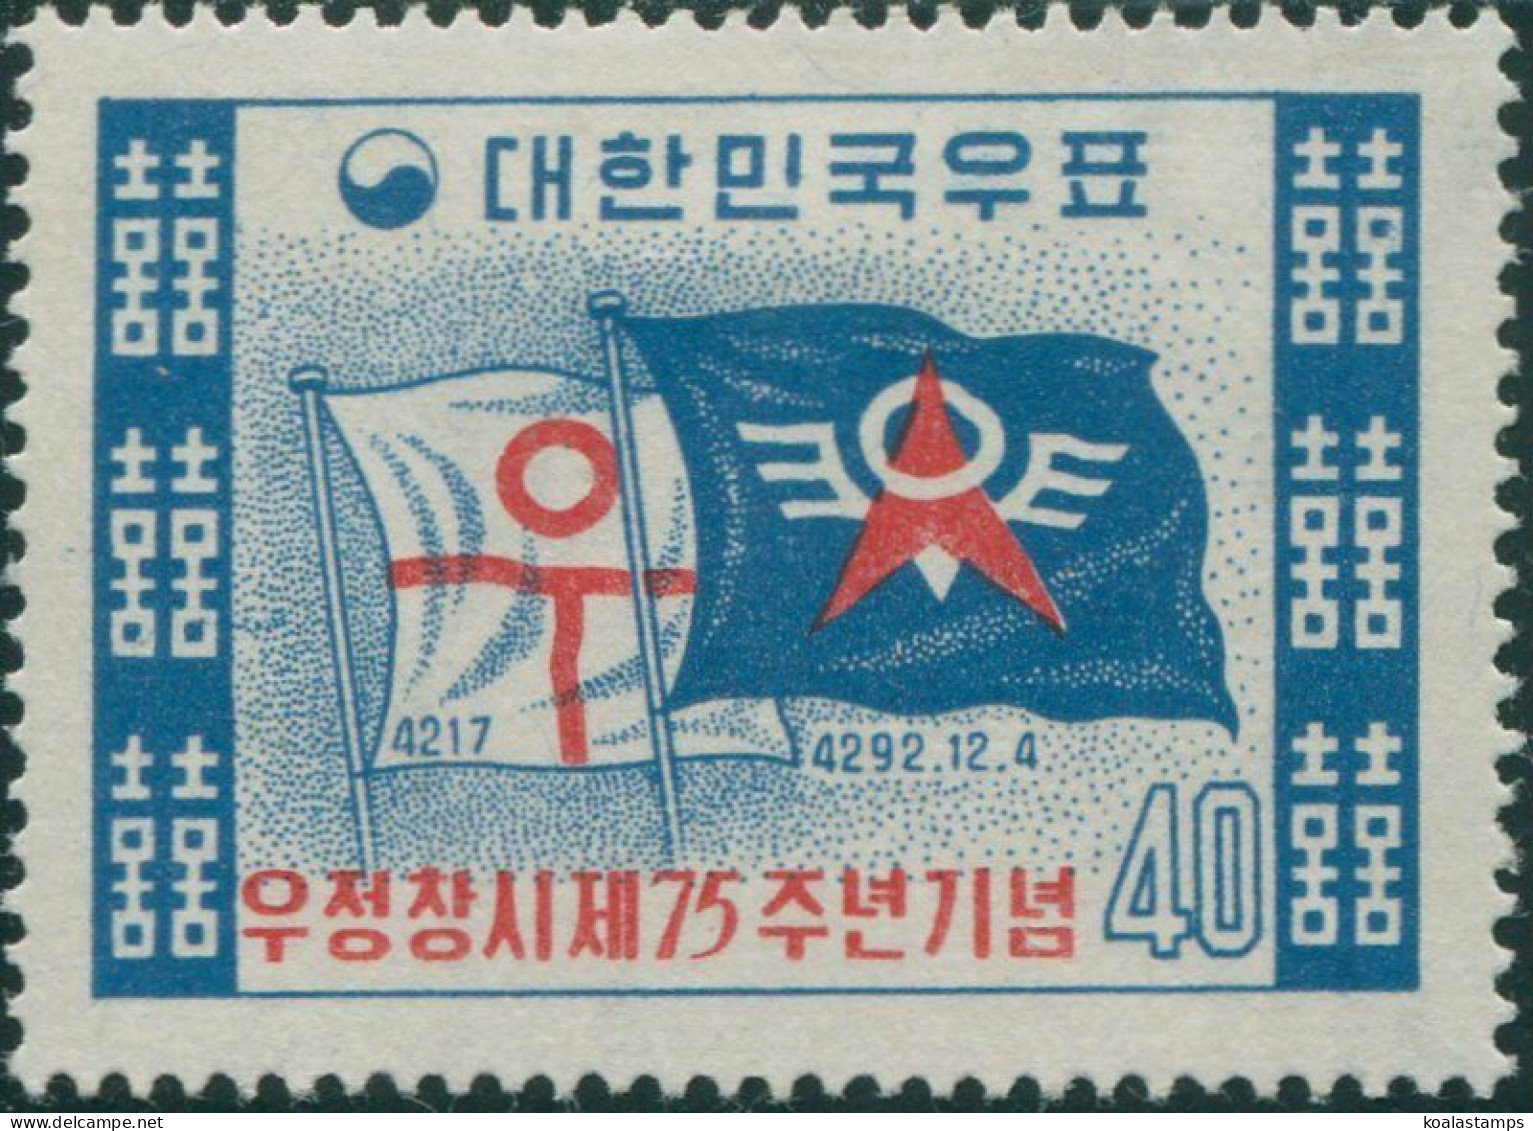 Korea South 1959 SG348 40h Postal Service Flags MLH - Corea Del Sur